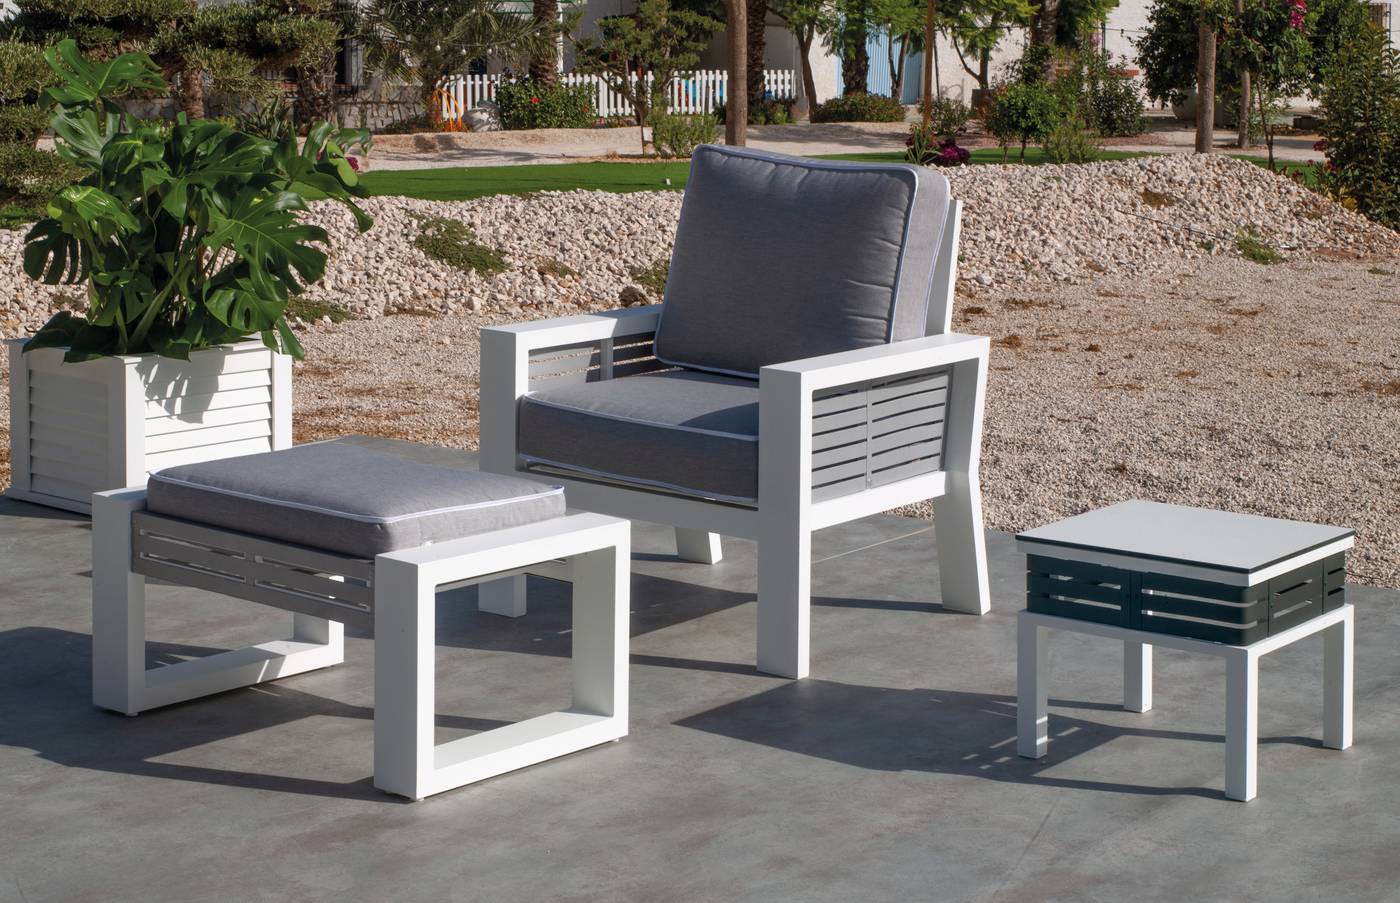 Sillón Aluminio Luxe Gala-1 - Exclusivo sillón relax de alumnio bicolor, con cojines gran confort desenfundables.